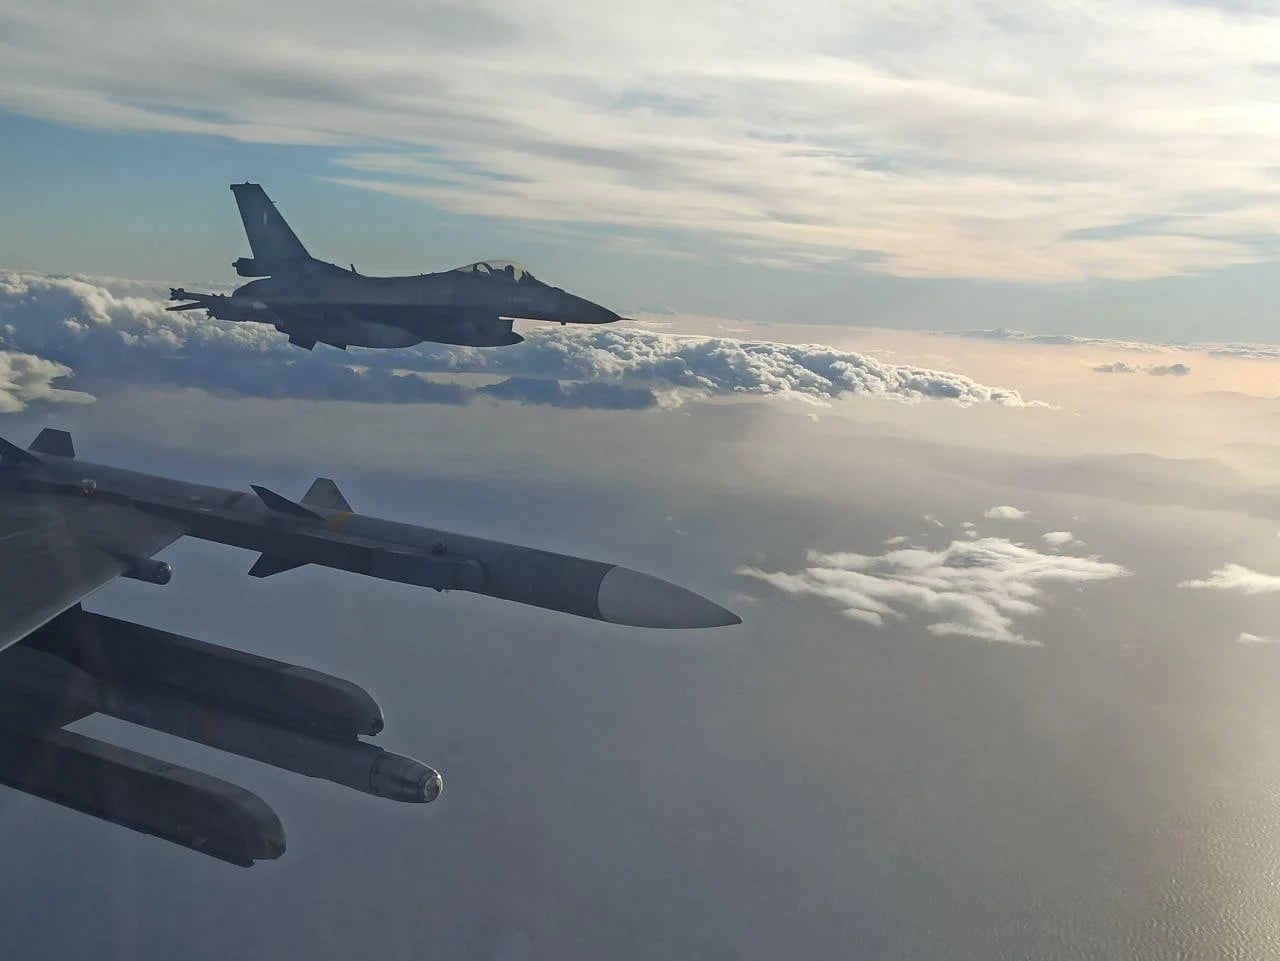 Μήνυμα αποτρεπτικής ισχύος προς την Τουρκία: Ετοιμοπόλεμη η Πολεμική Αεροπορία ανεβάζει ρυθμούς – Rafale και Mirage 2000-5 θα δώσουν «ανάσες» στα F-16 Viper